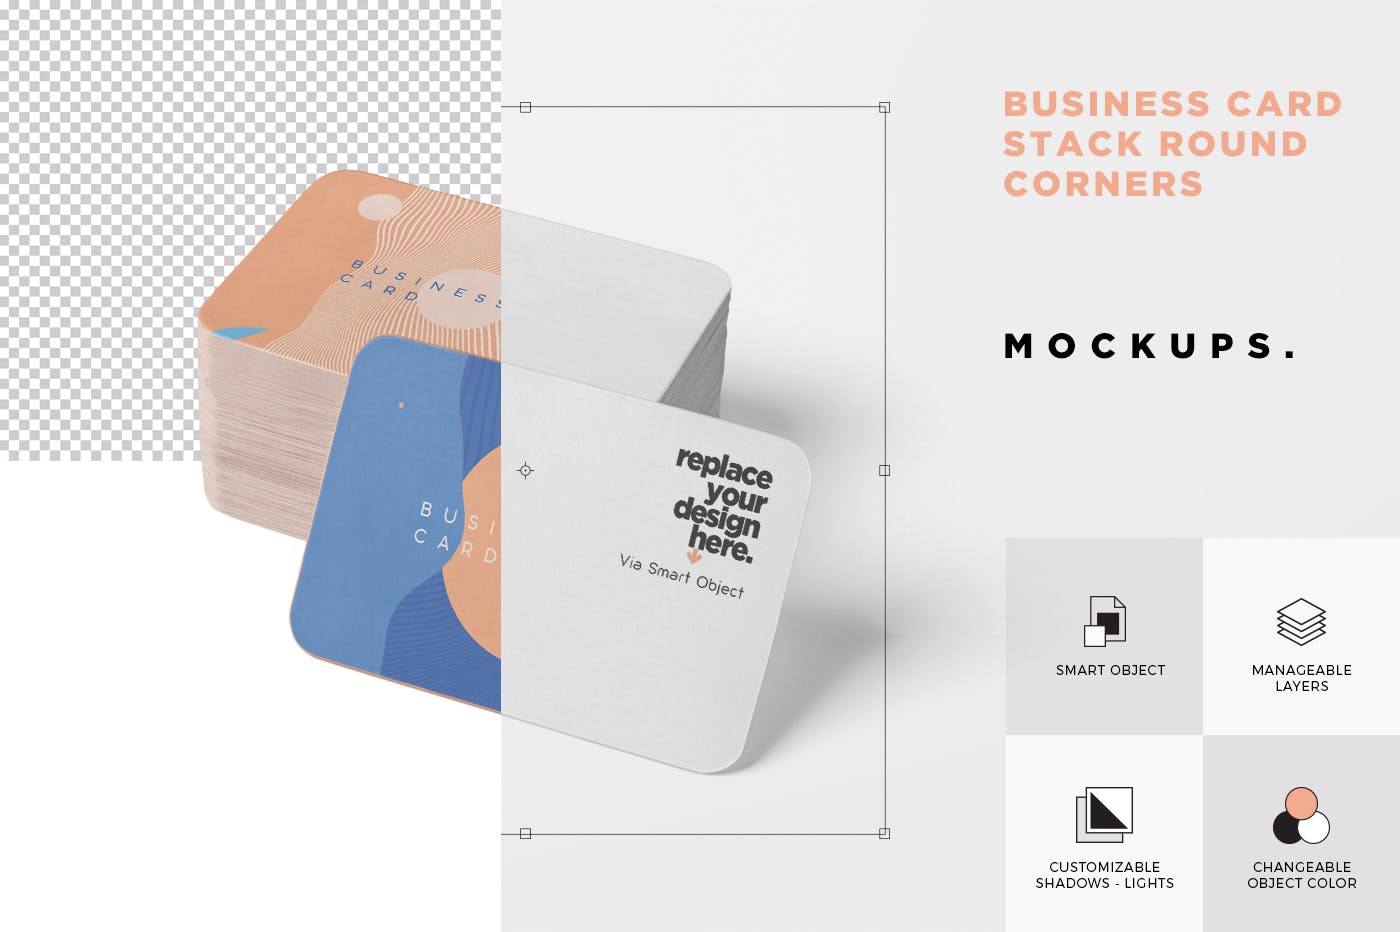 圆角企业名片设计效果图预览样机模板 Business Card Mockup Stack Round Corners插图(5)